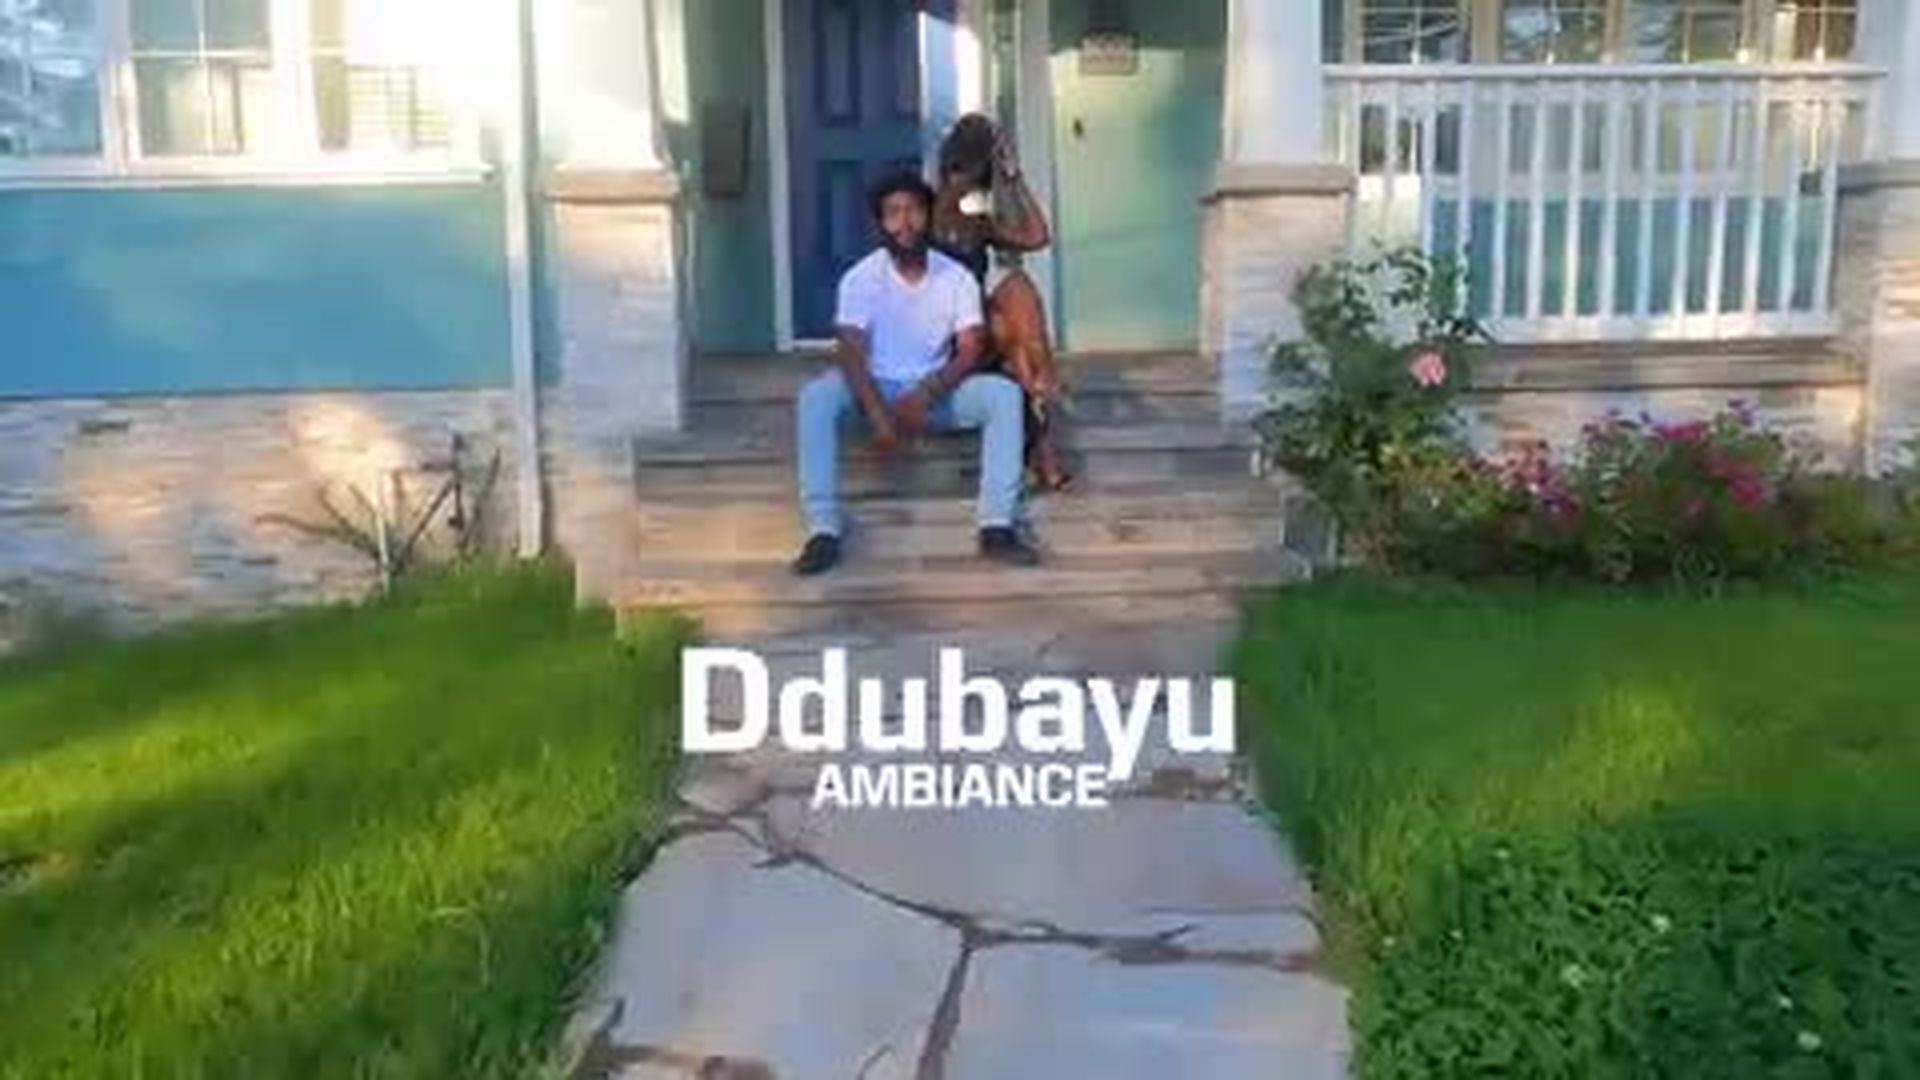 Ddubayu Ambiance Video (Baddies)